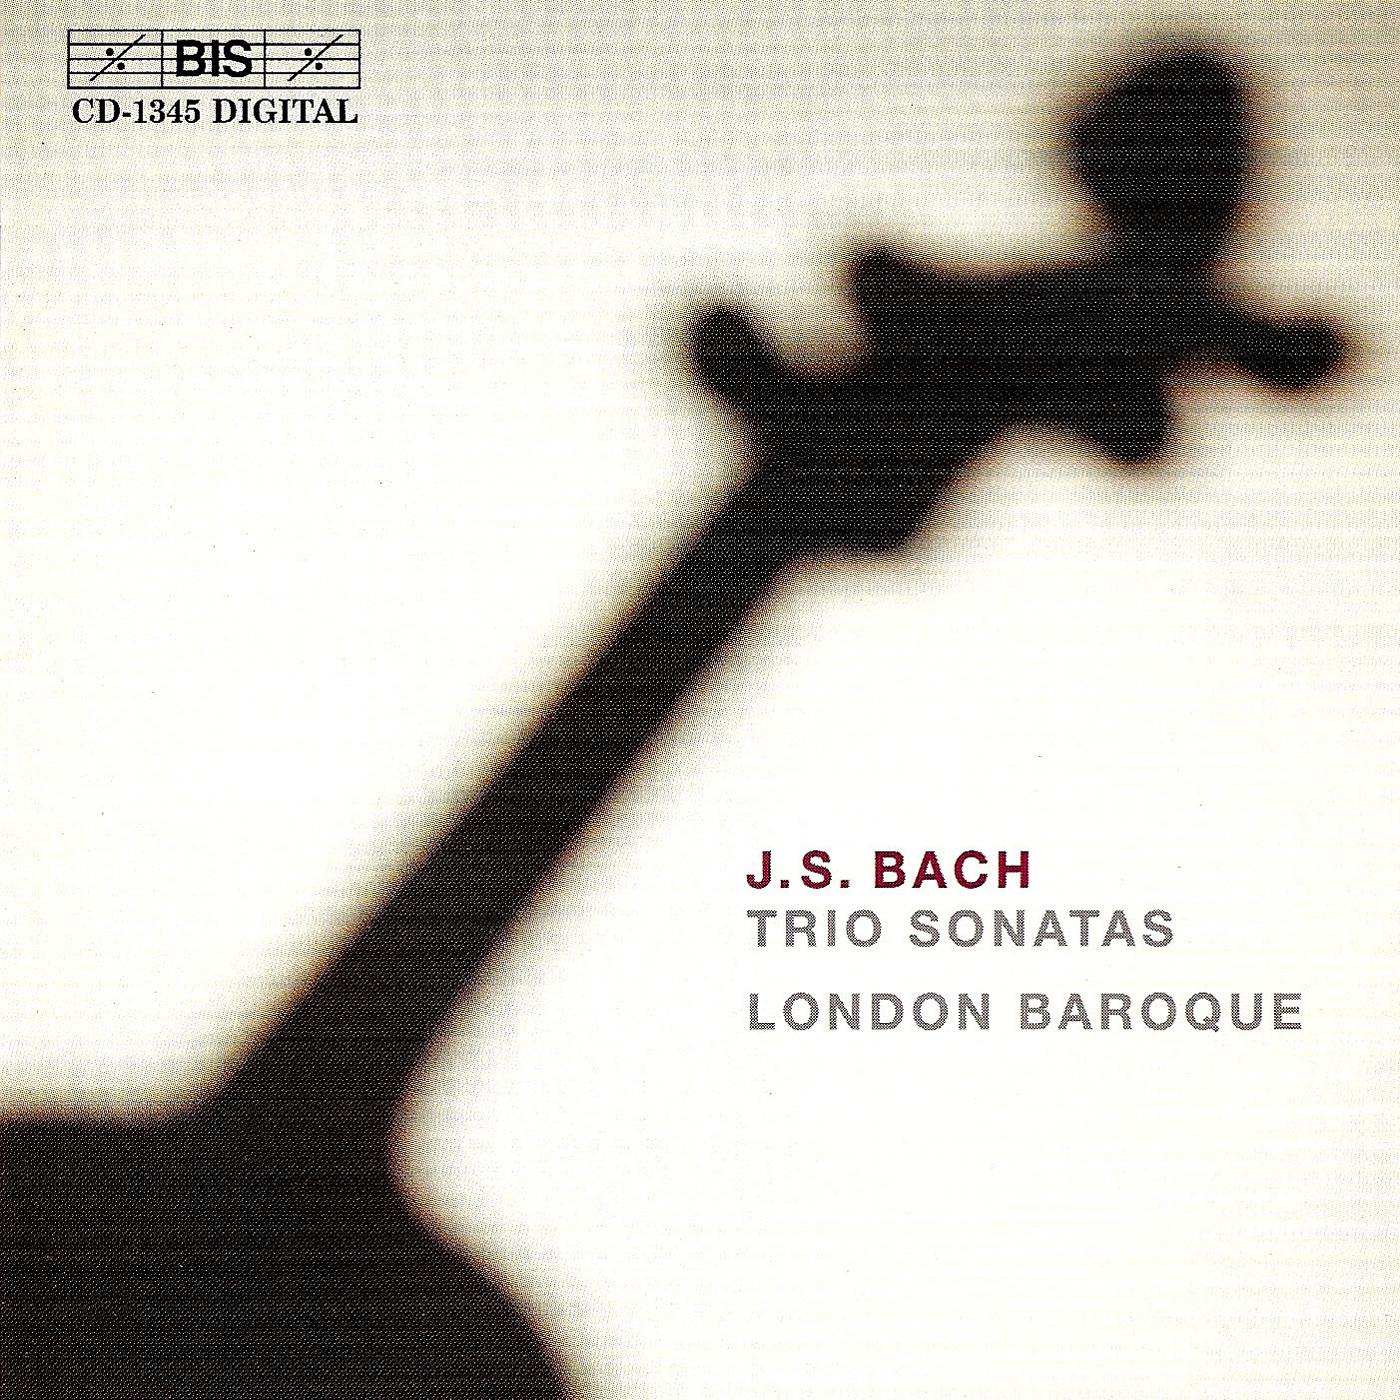 BACH, J.S.: Trio Sonatas, BWV 525-530 (trans. R. Gwilt)